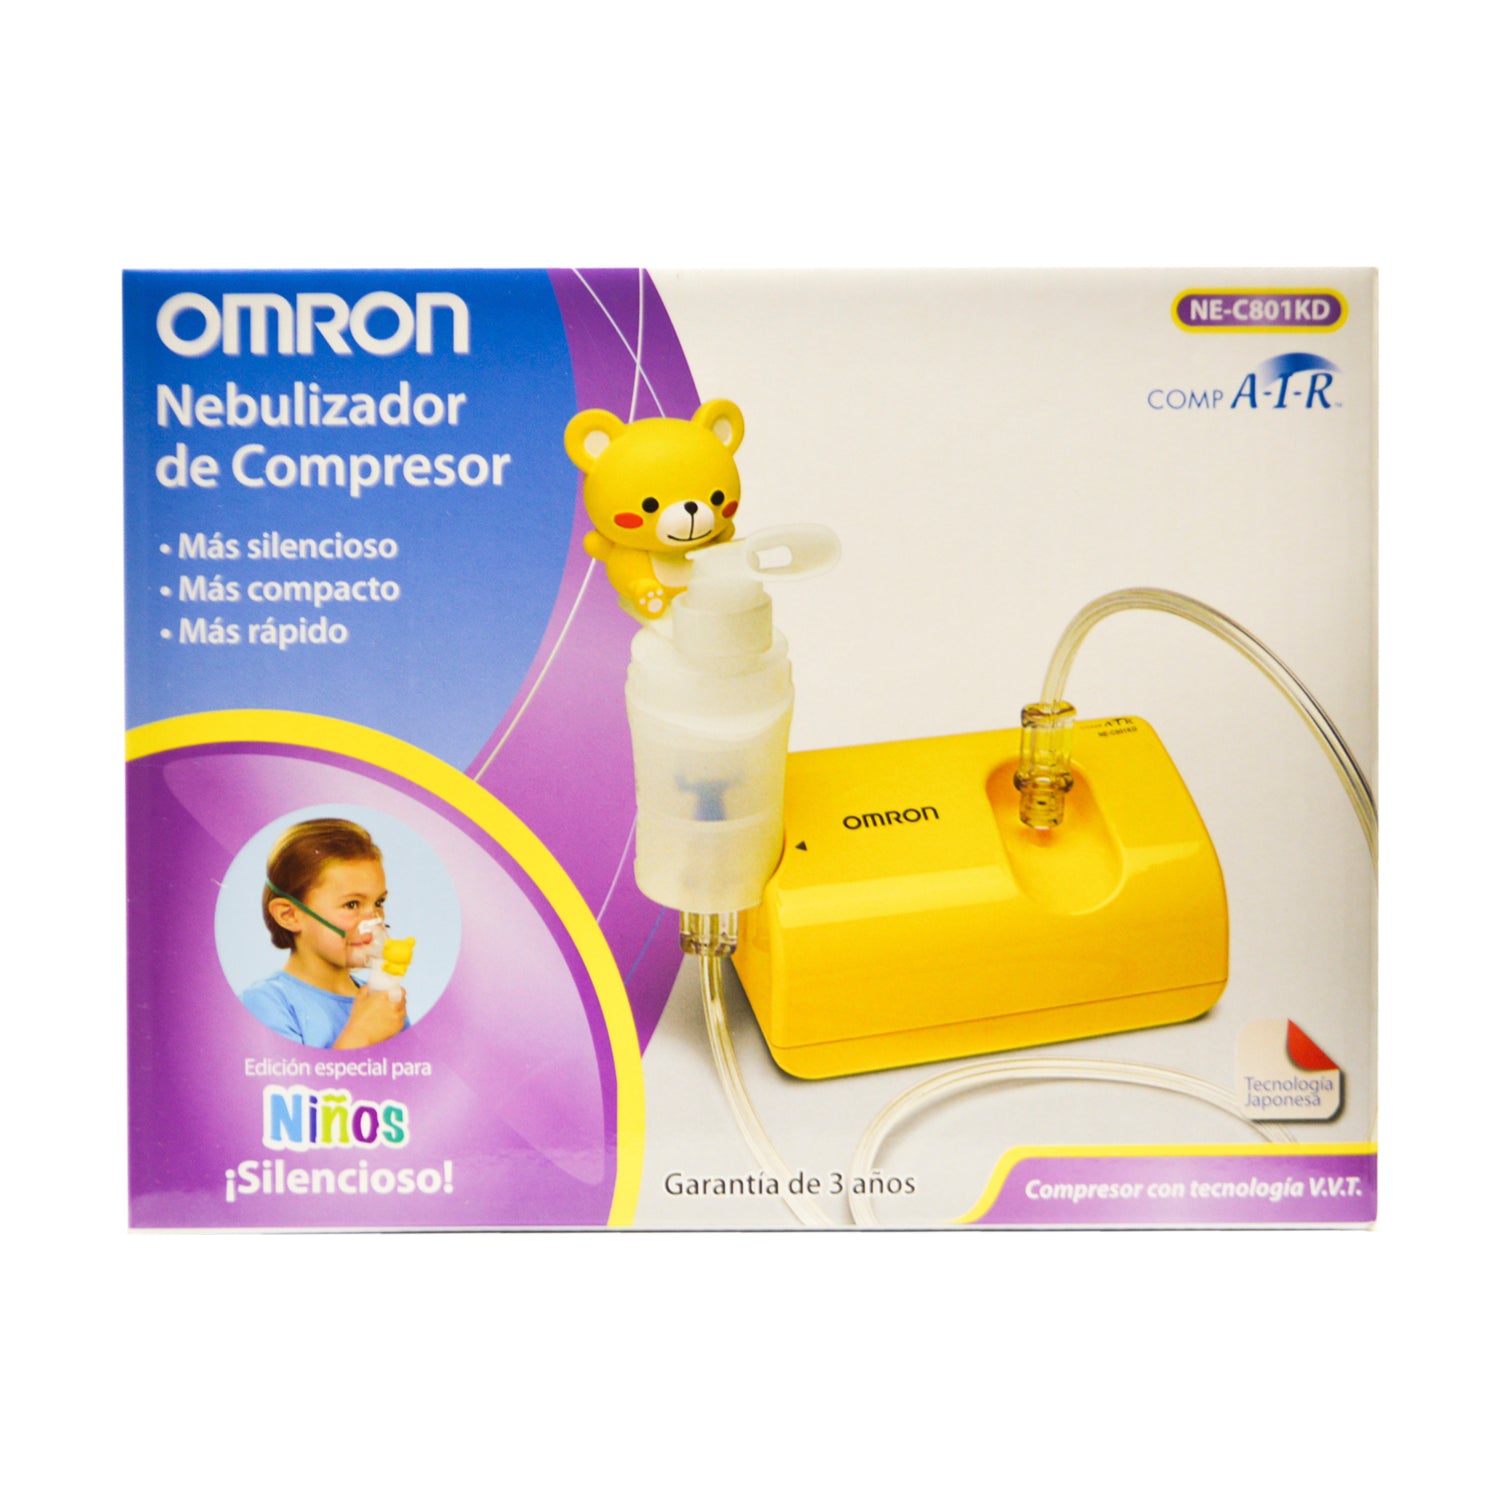 Nebulizador Omron Infantil NEC801KD Compresor – The Care Market